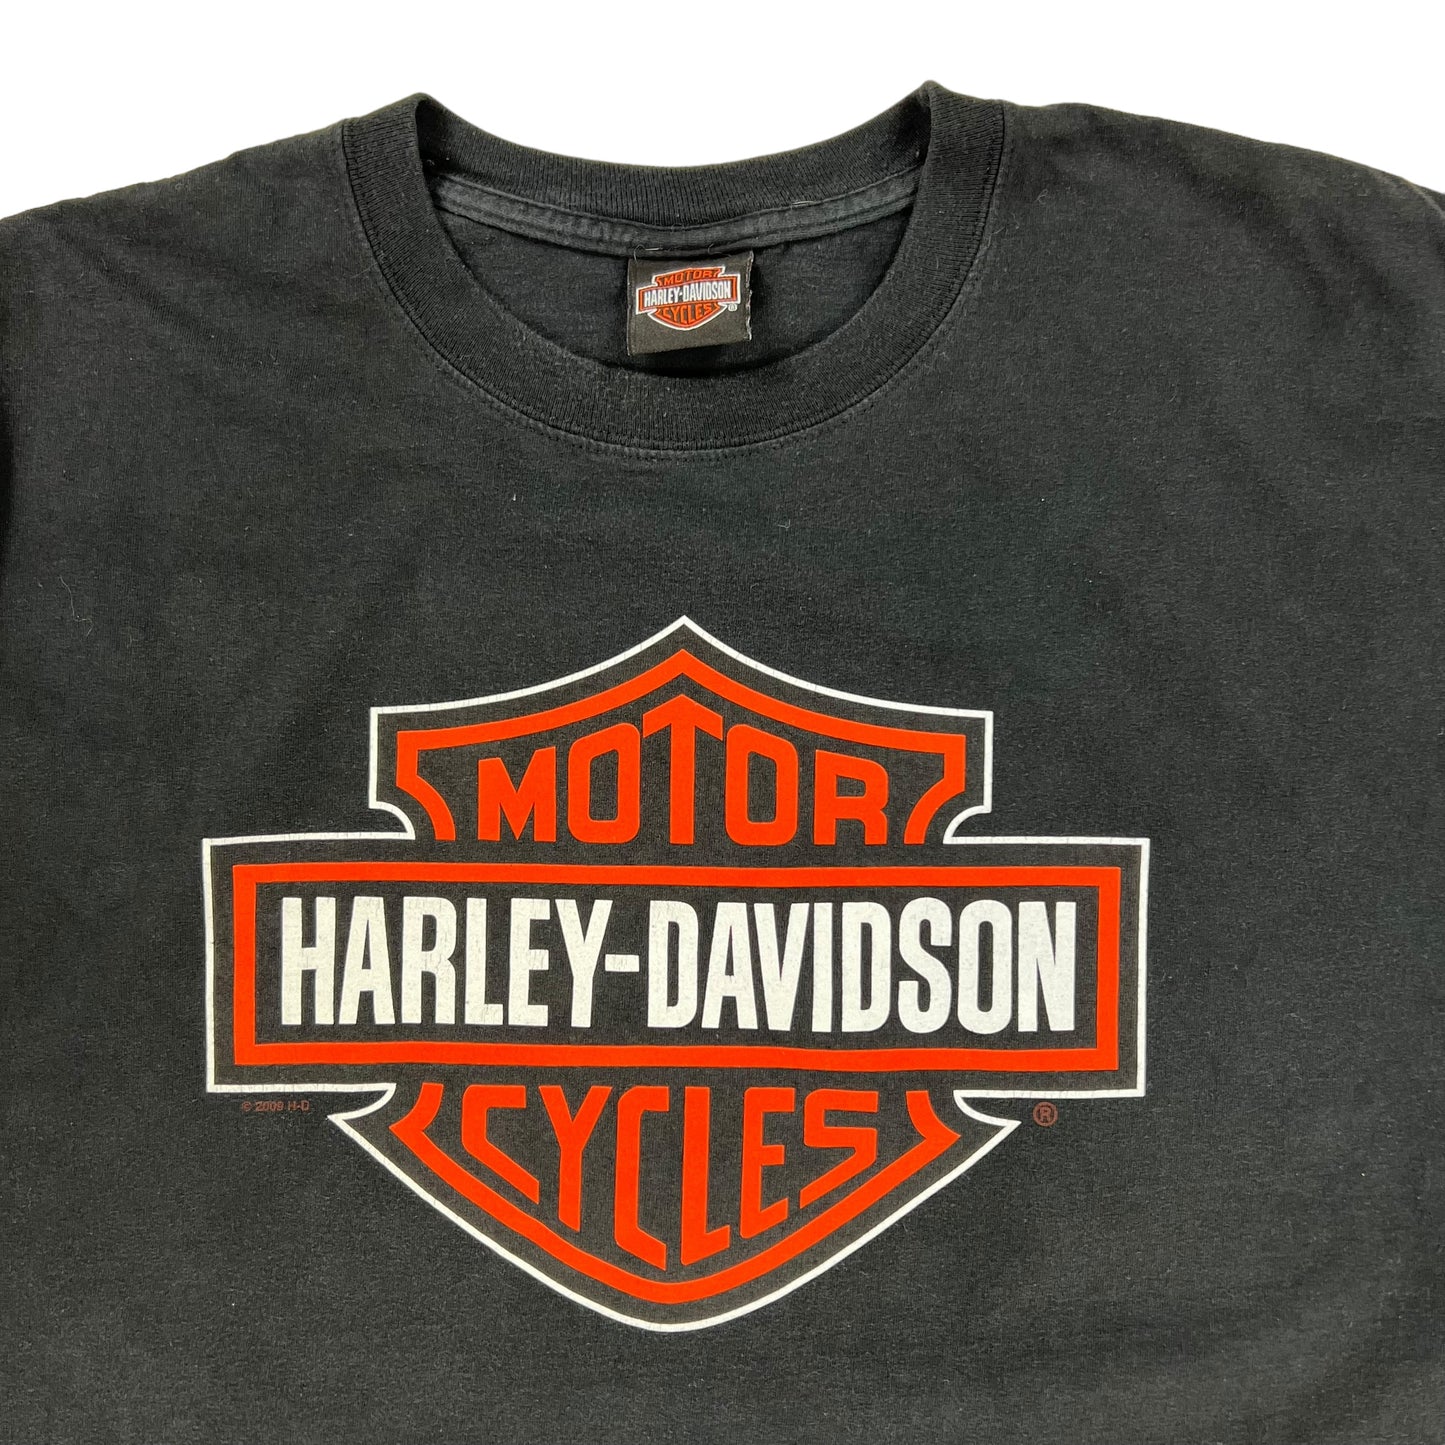 2014 Harley Davidson Motorcycles Grand Canyon tee (L)